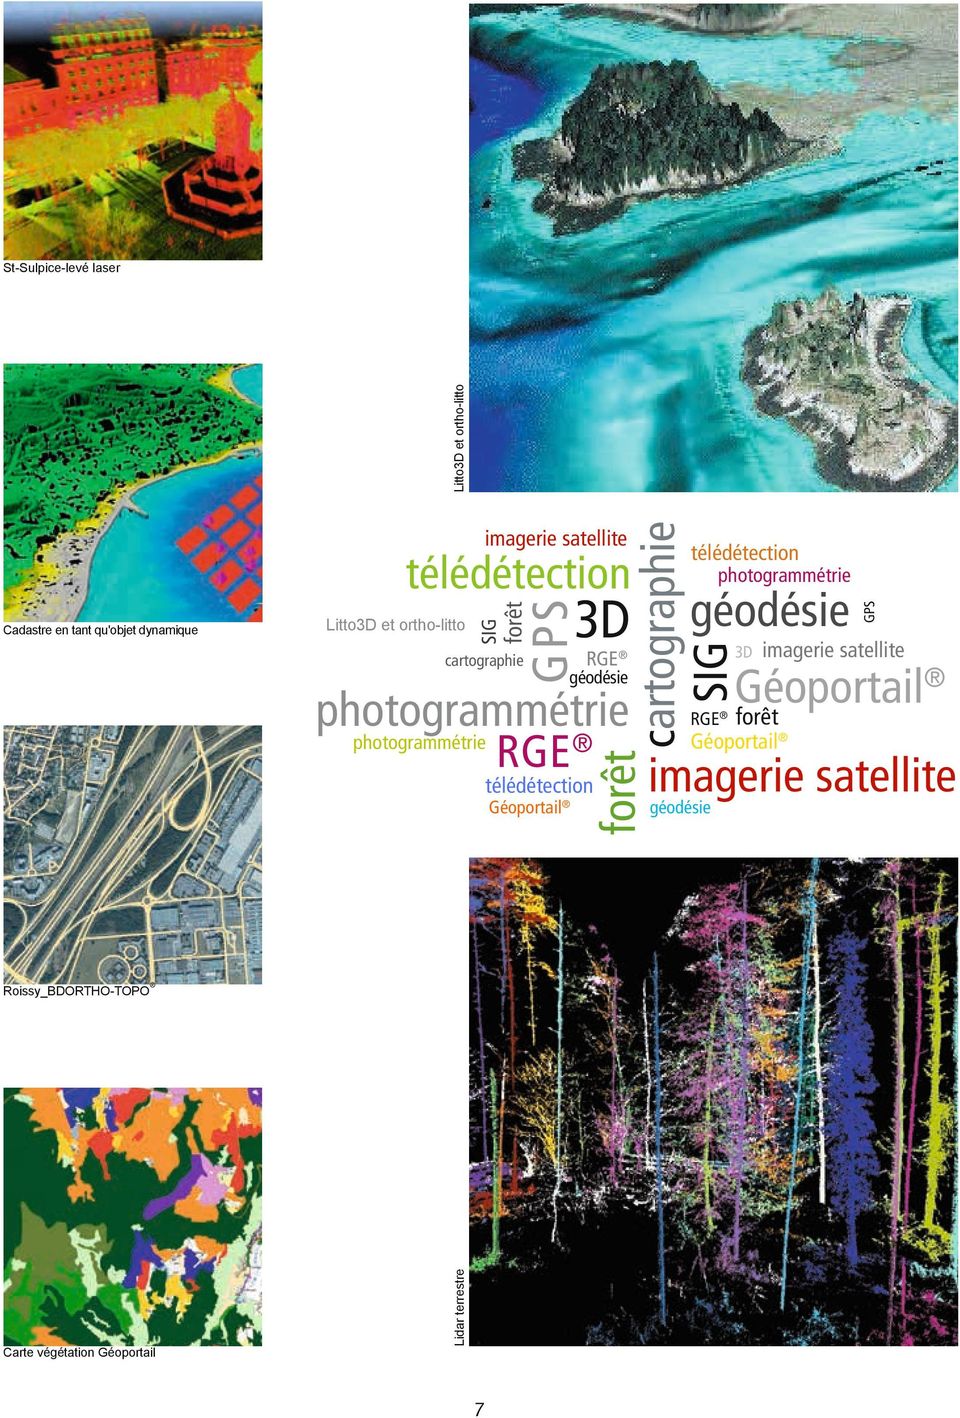 Roissy_BDORTHO-TOPO 7 SIG télédétection télédétection 3D photogrammétrie géodésie 3D RGE GPS imagerie satellite